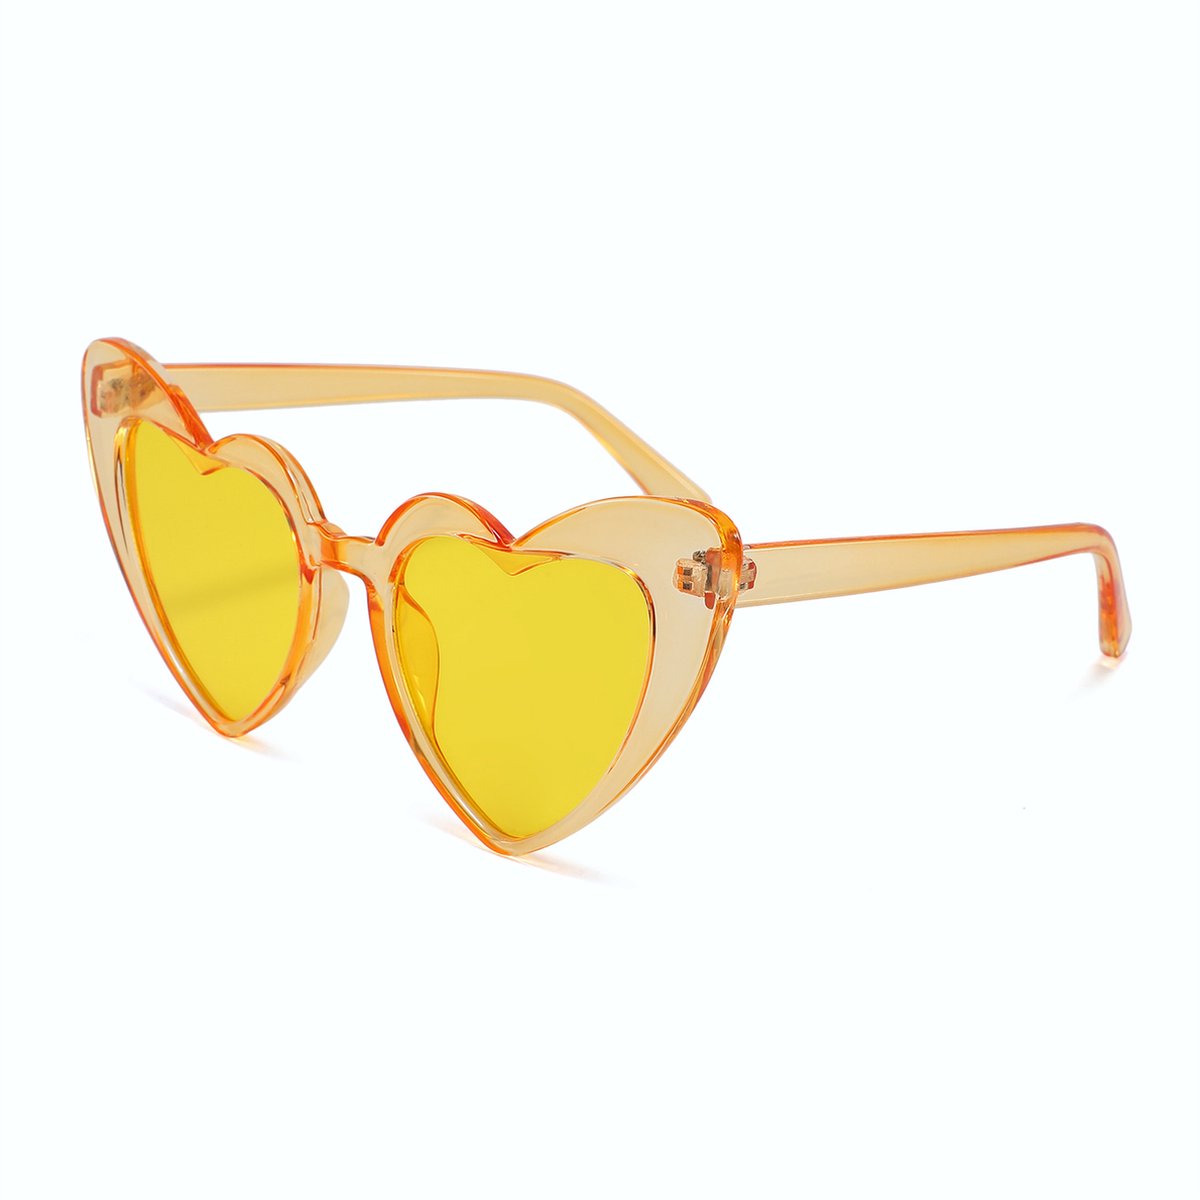 DAEBAK Gele vrouwen zonnebril in hart vorm [Yellow] met hartjes zonnebrillen Dames Festival Sunglasses